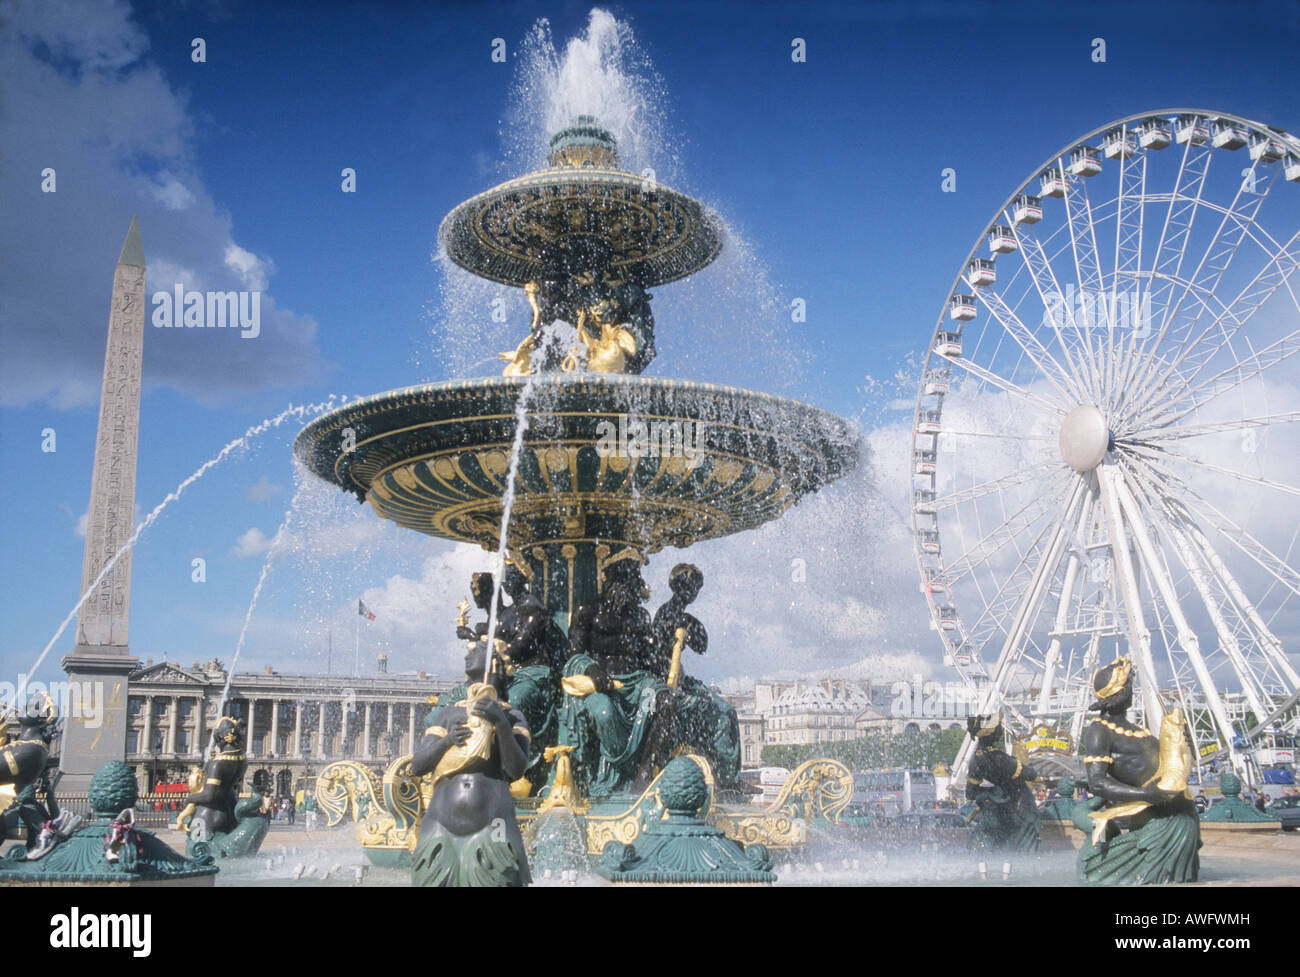 Place de la Concorde, ruota panoramica Ferris, Fontana, Obelisco, Louvre. Parigi Francia turismo cronologia dei punti di riferimento Foto Stock